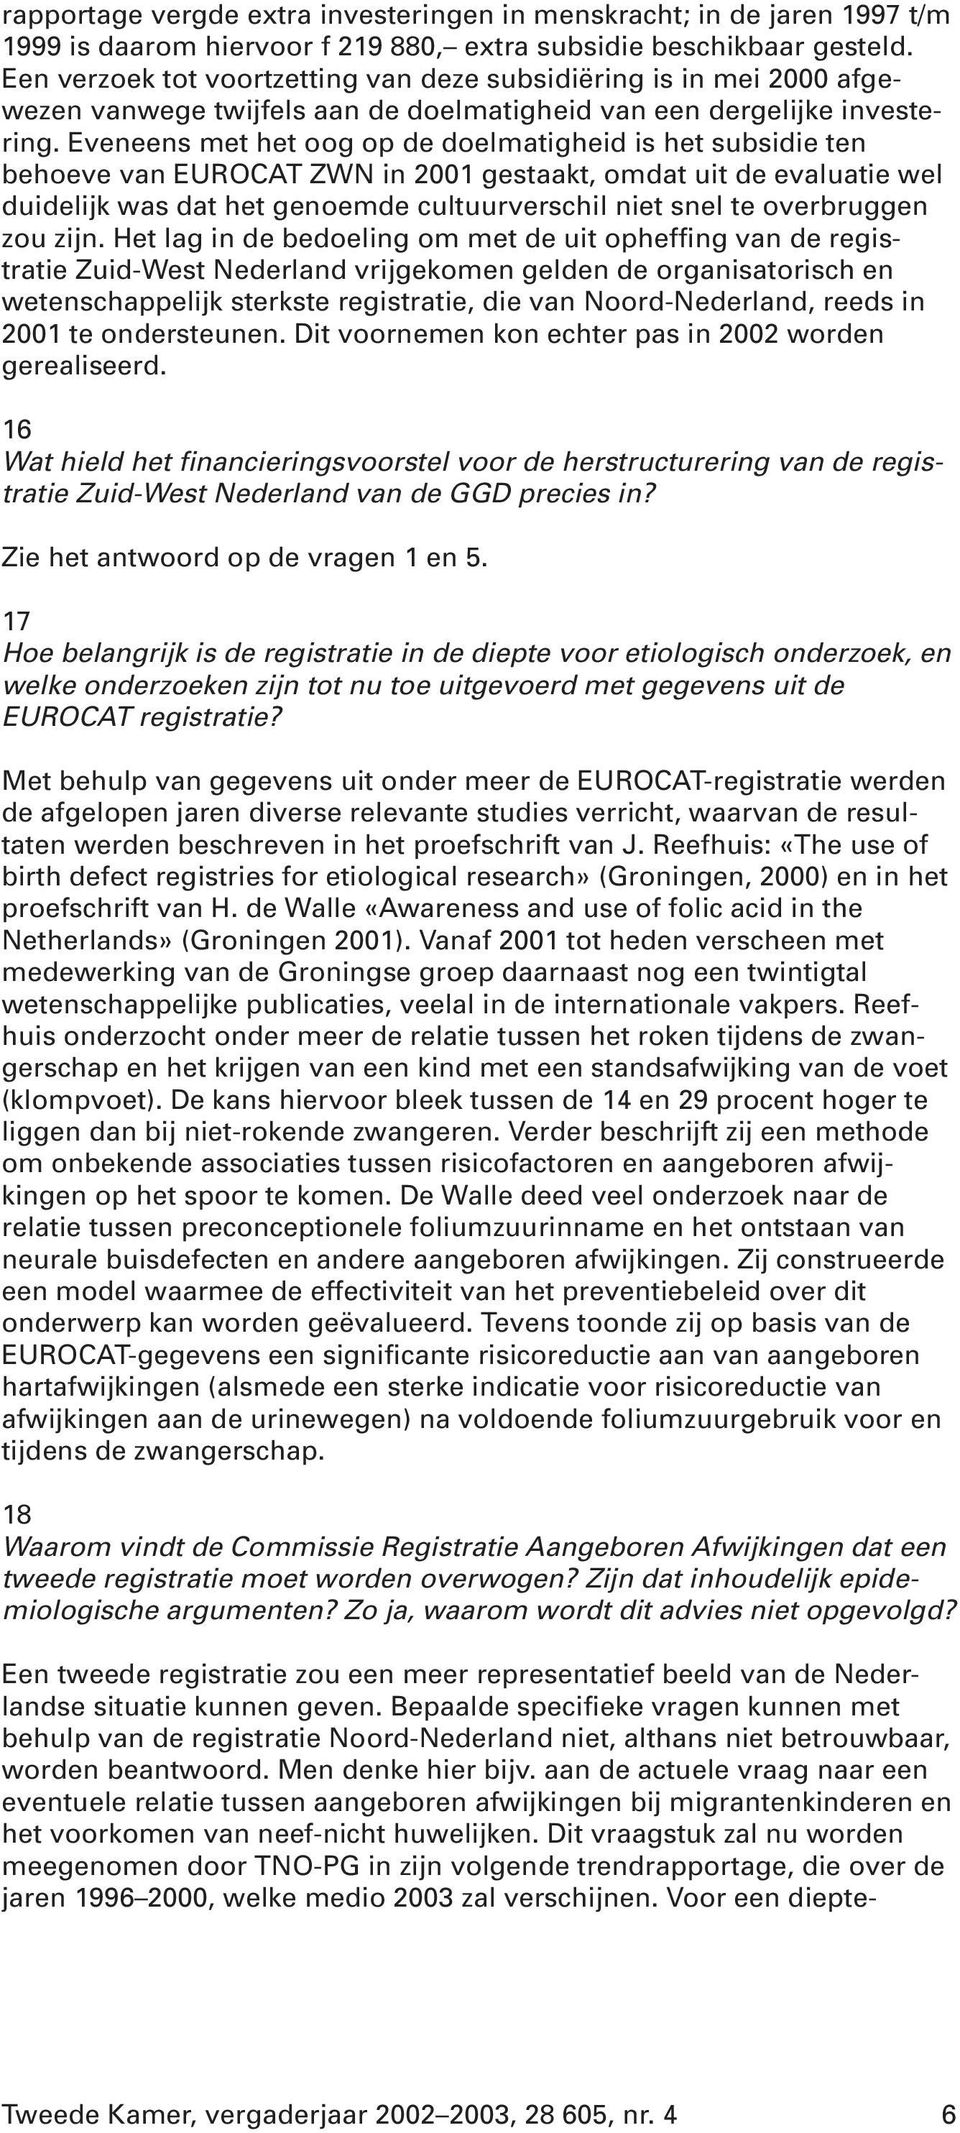 Eveneens met het oog op de doelmatigheid is het subsidie ten behoeve van EUROCAT ZWN in 2001 gestaakt, omdat uit de evaluatie wel duidelijk was dat het genoemde cultuurverschil niet snel te